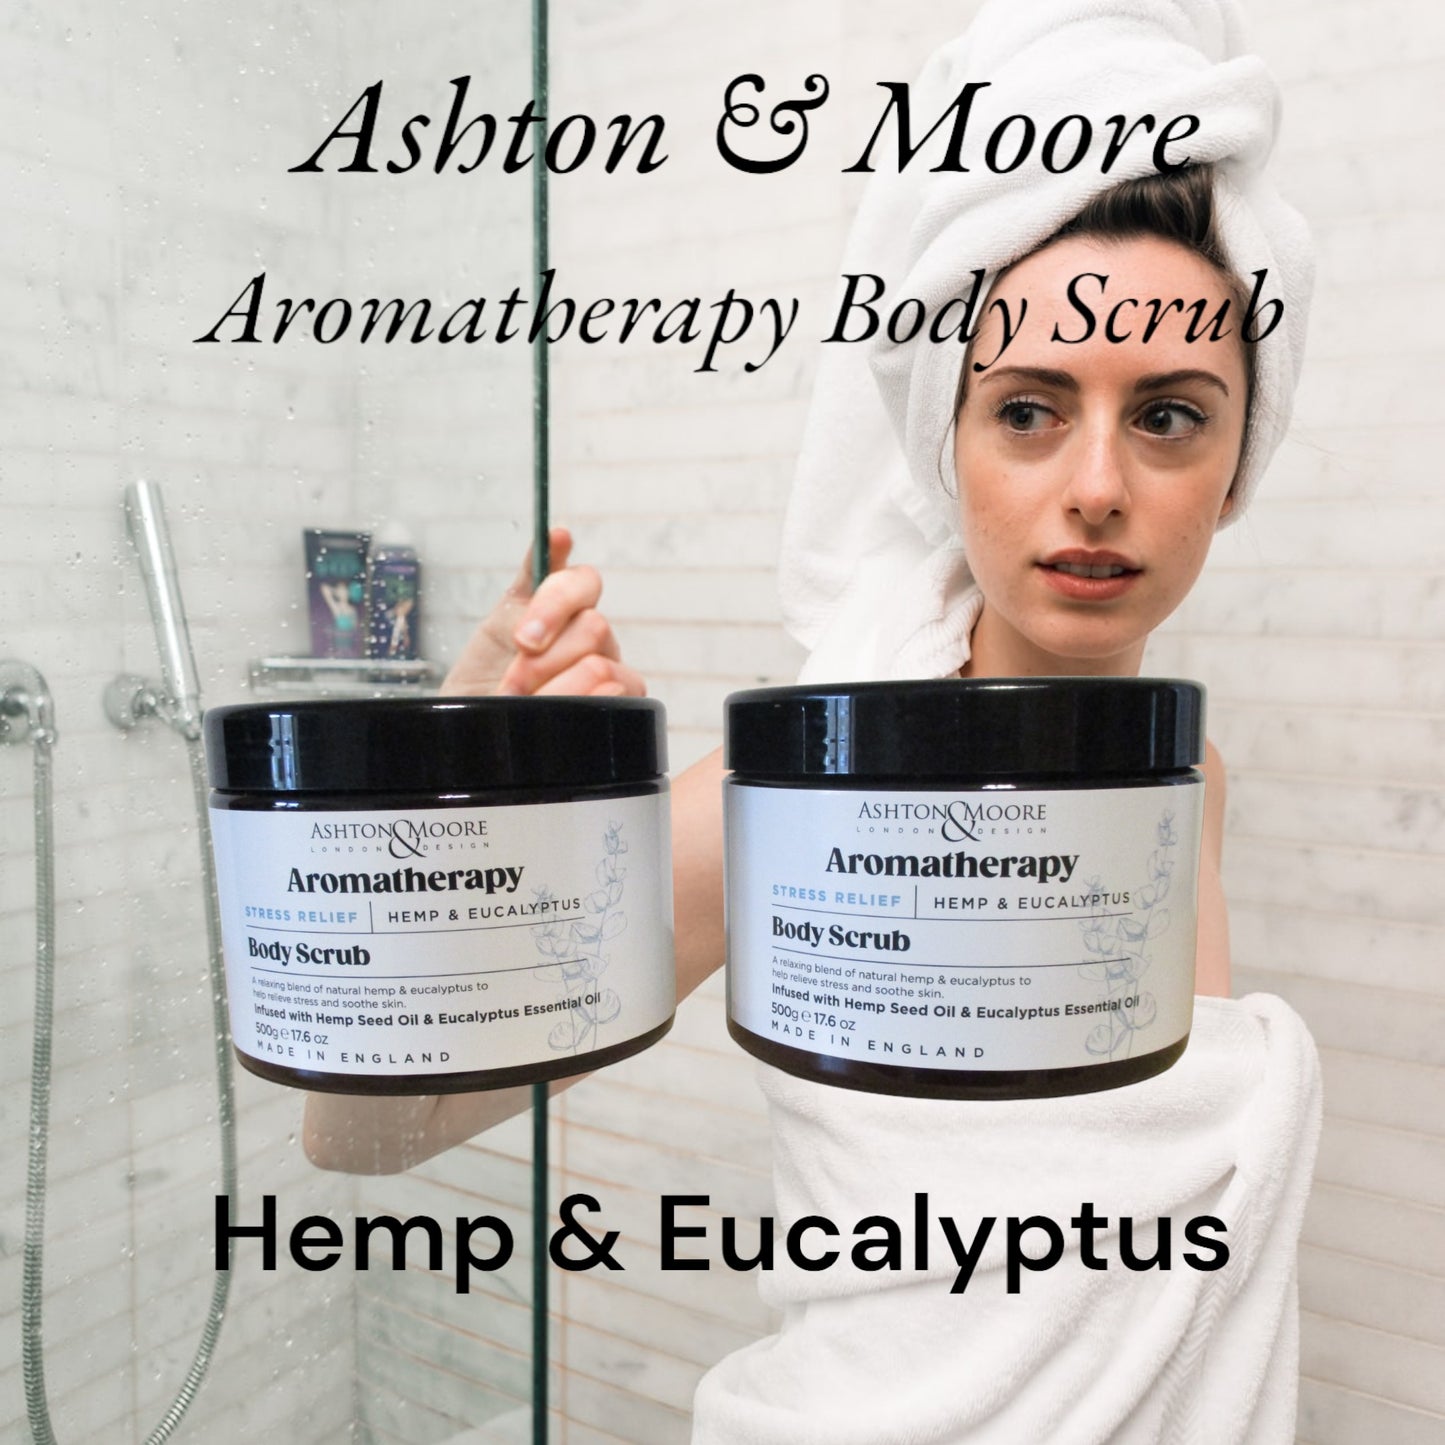 Ashton & Moore – Aromatherapy Body Wash & Body Scrub.Wash